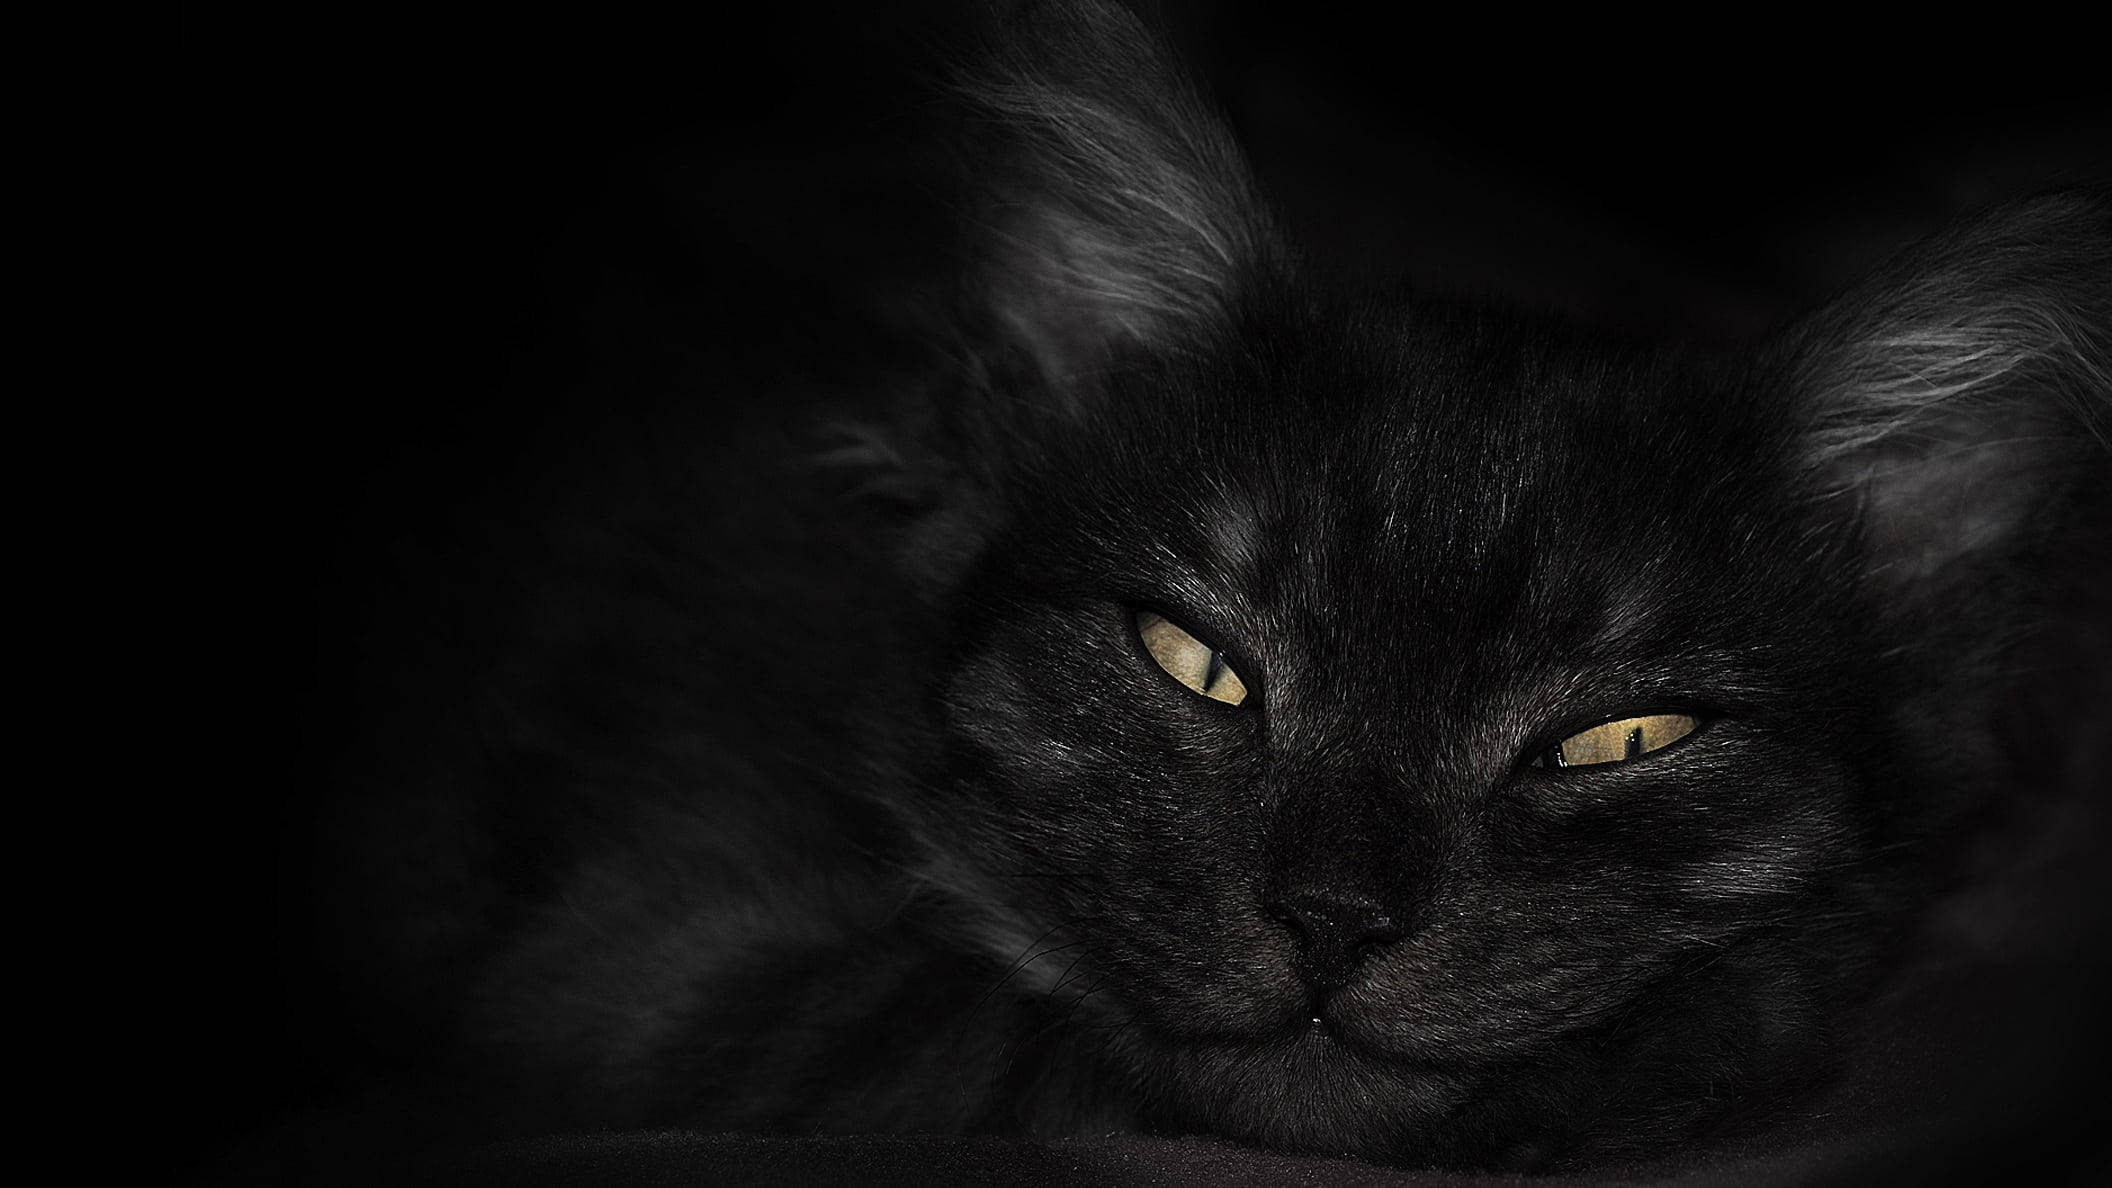 Hình nền mèo đen trên laptop tối sẽ giúp bạn thư giãn và mở rộng tầm mắt. Khi nhìn vào con mèo đen đáng yêu trên màn hình, bạn sẽ có cảm giác thoải mái và hạnh phúc hơn. Điều đó giúp tăng năng suất làm việc và giảm căng thẳng.